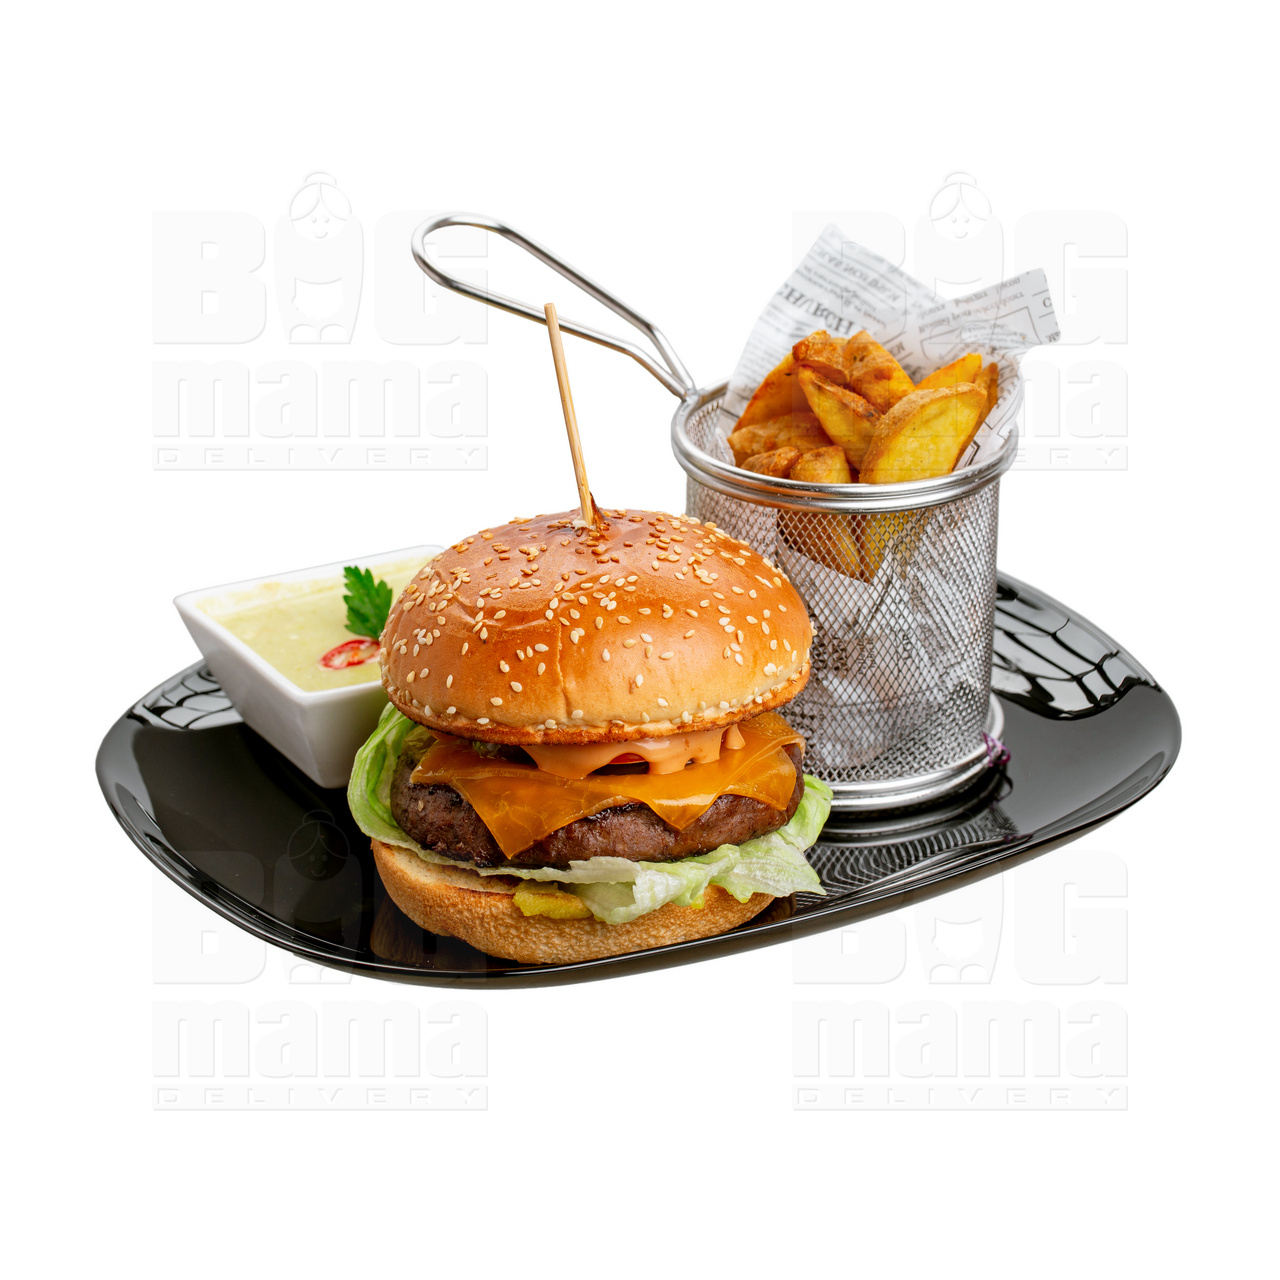 Product #255 image - Meniu jalapeno hamburger